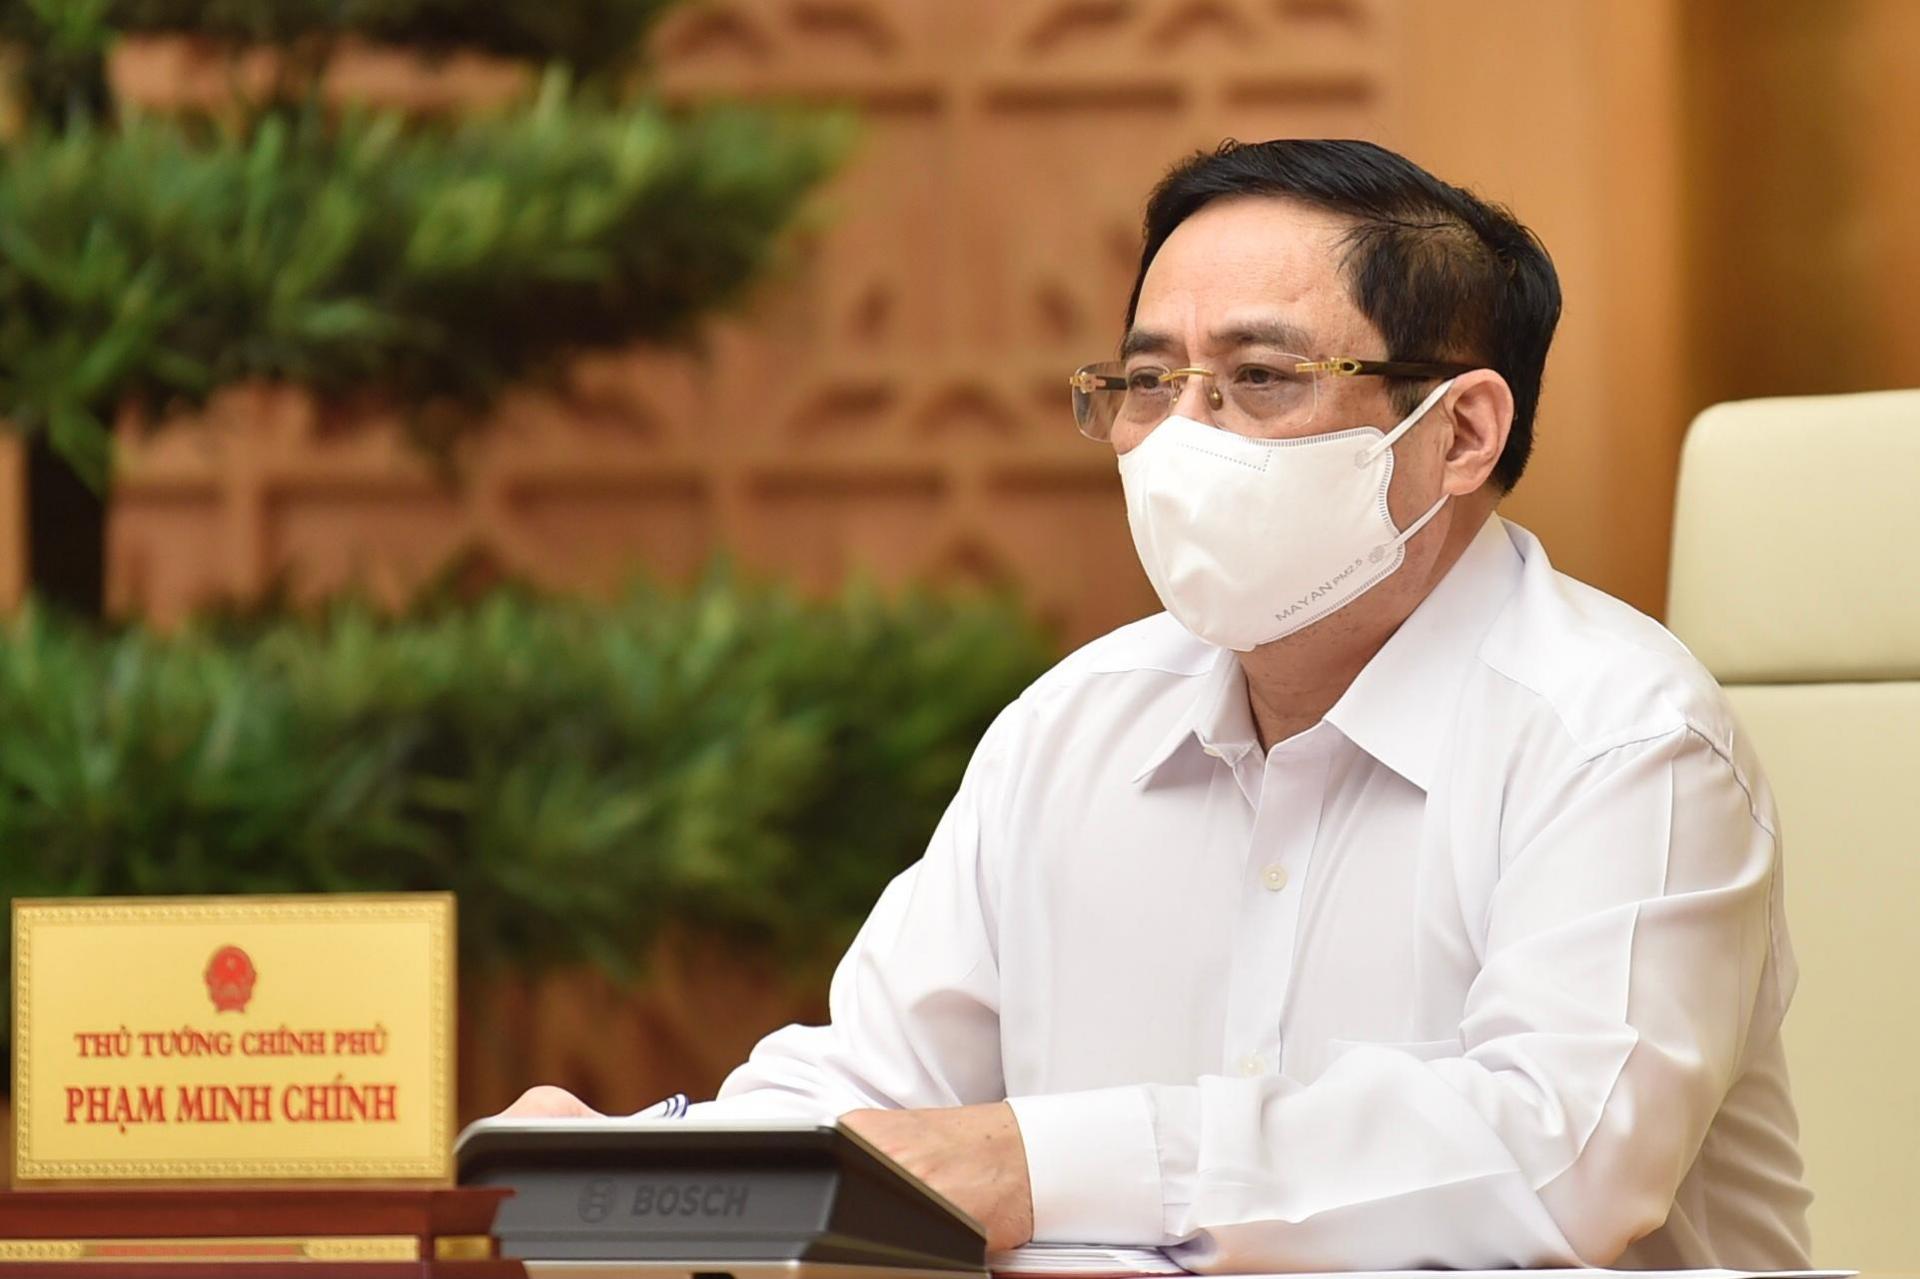 Thủ tướng Chính phủ Phạm Minh Chính triệu tập cuộc họp trực tuyến với tỉnh Bắc Giang, Bắc Ninh và các lực lượng chống dịch tại địa phương này